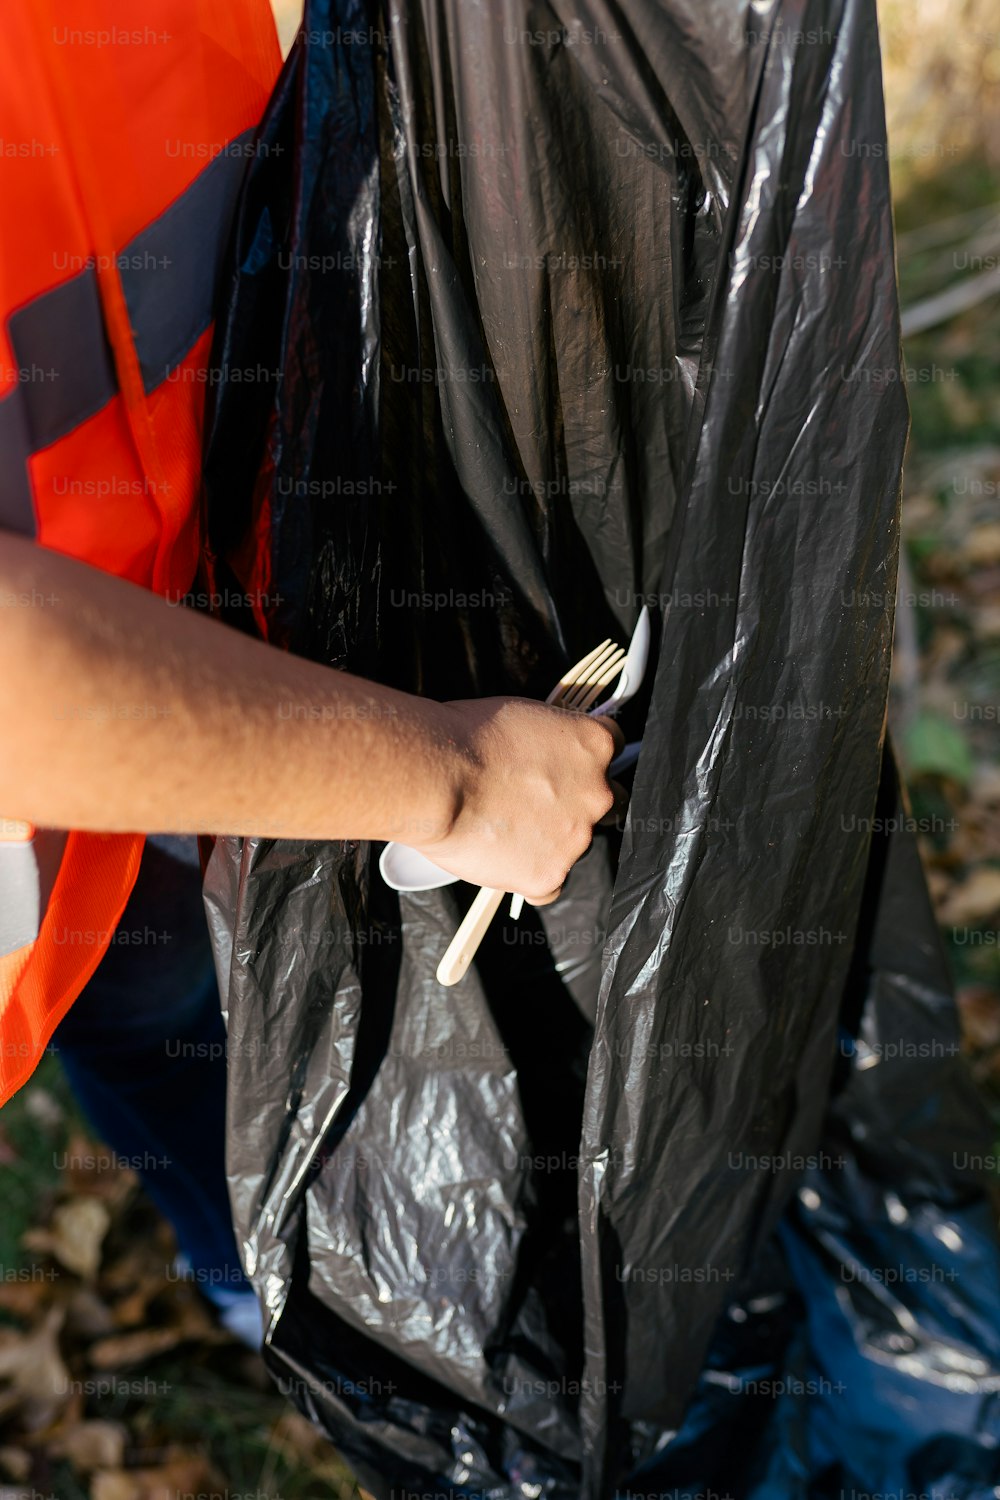 Una persona con un chaleco naranja sosteniendo una bolsa de plástico negra